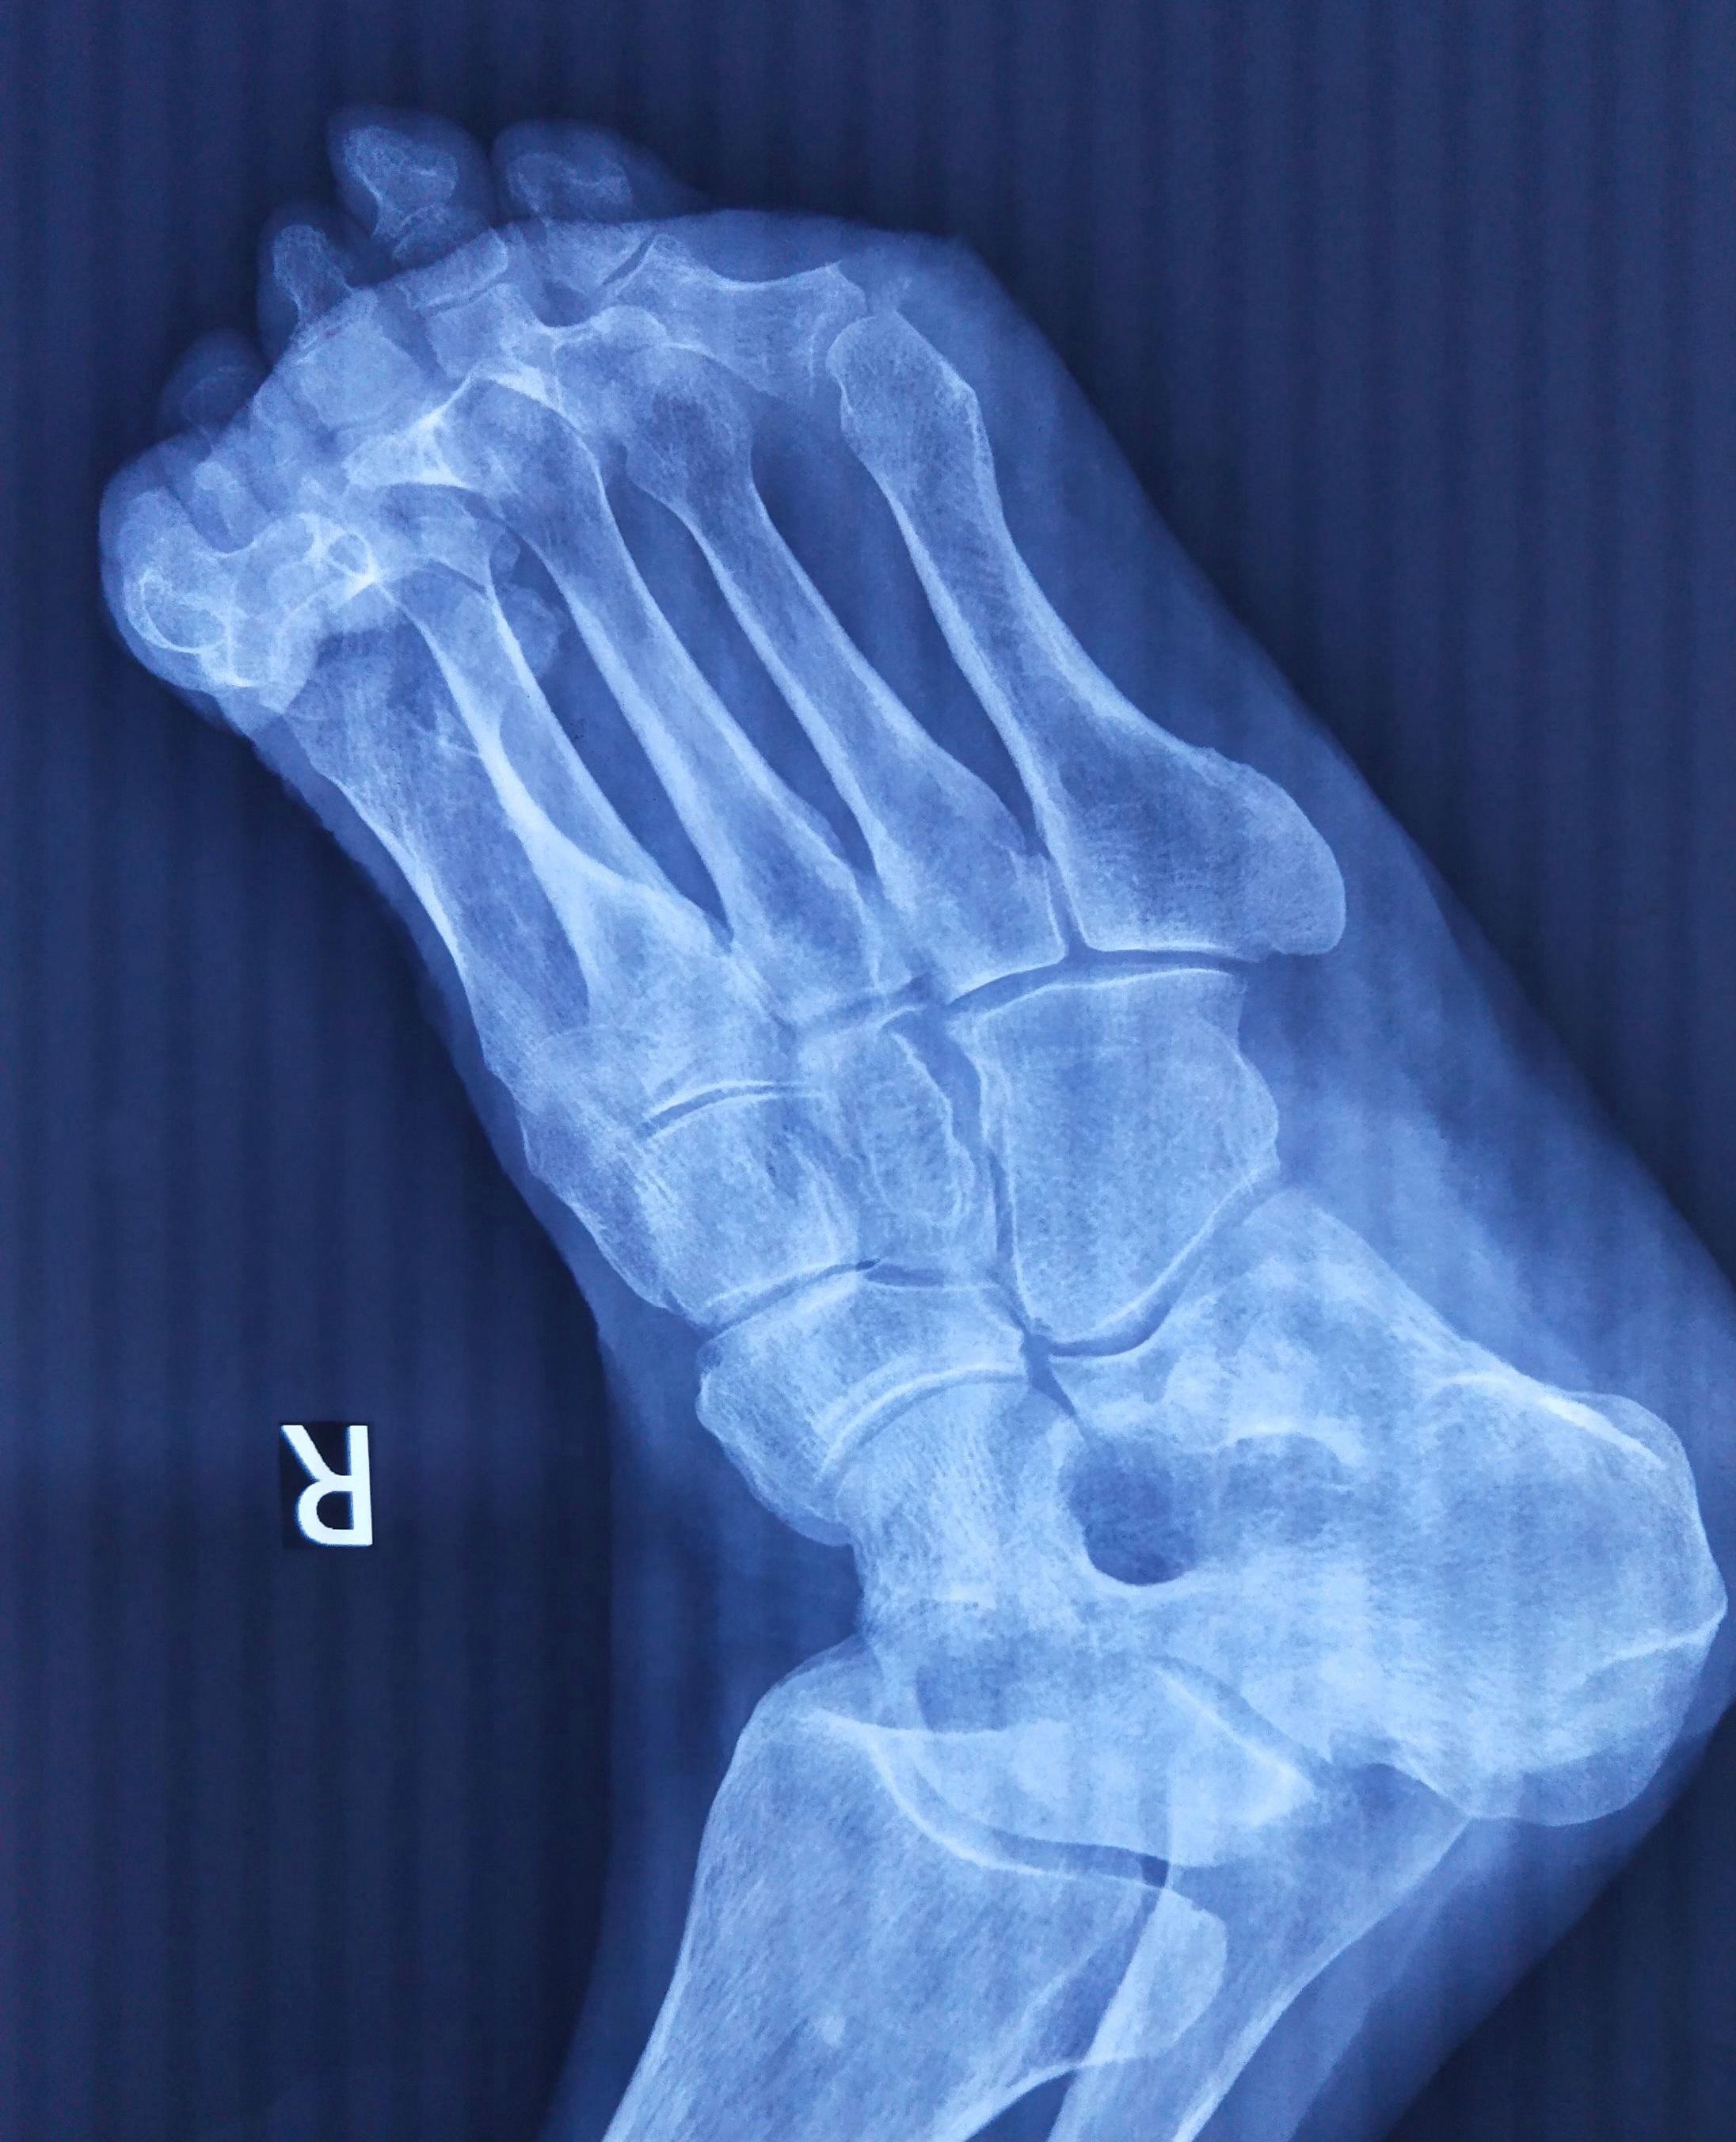 脚拇指粉碎性骨折工伤能评到10级吗？